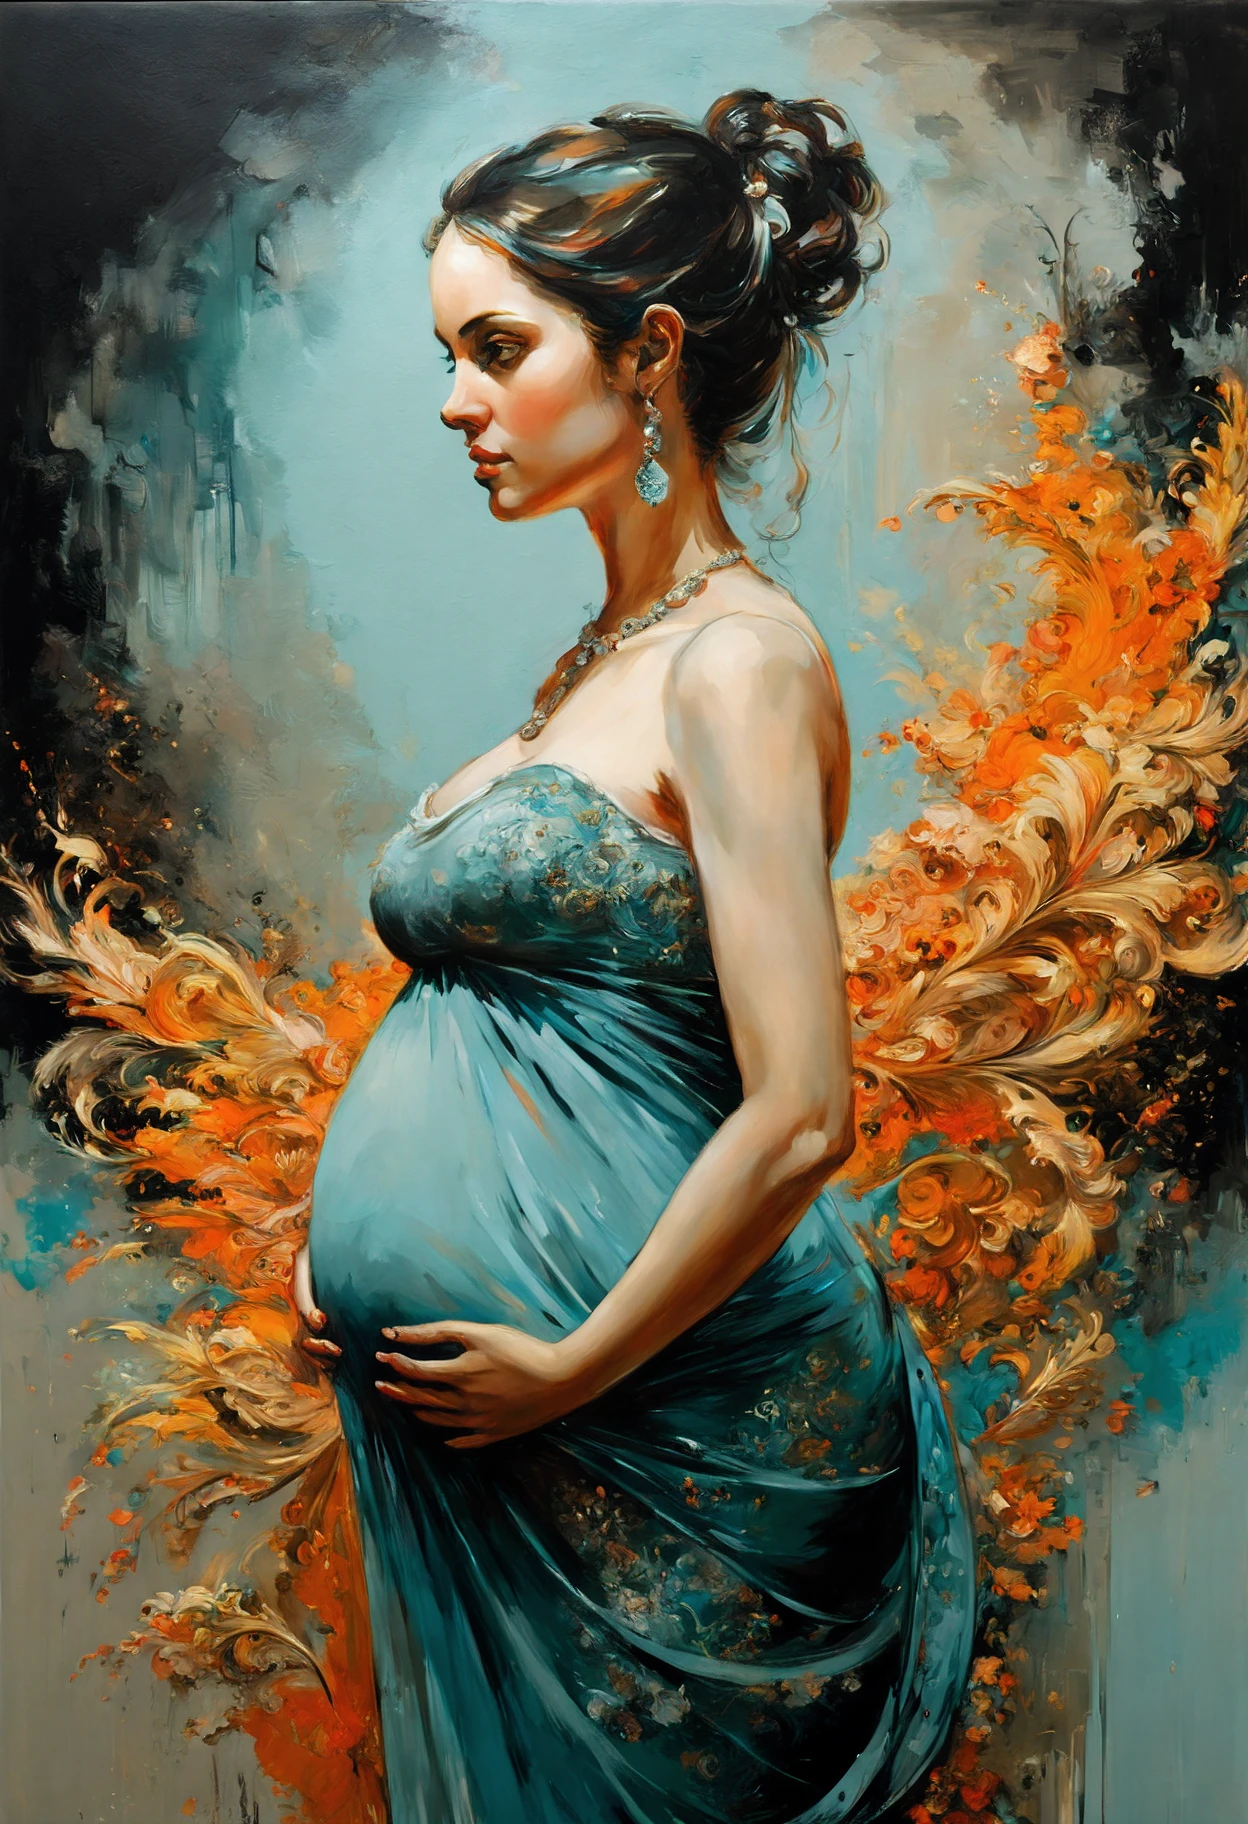 retrato de uma mulher grávida, esplêndido, Altamente detalhado, 8K, ornamentado, intricado, cinematic, desembaçado, atmosférico, (pintura a óleo:0.75), (arte inicial:0.75),(cerceta:0.2),(laranja:0.2), (por Jeremy Mann:0.5), (por John Constable:0.1),(por El Greco:0.5),(tinta acrílica:0.75), (aquarela:0.15), pinceladas visíveis, algumas manchas